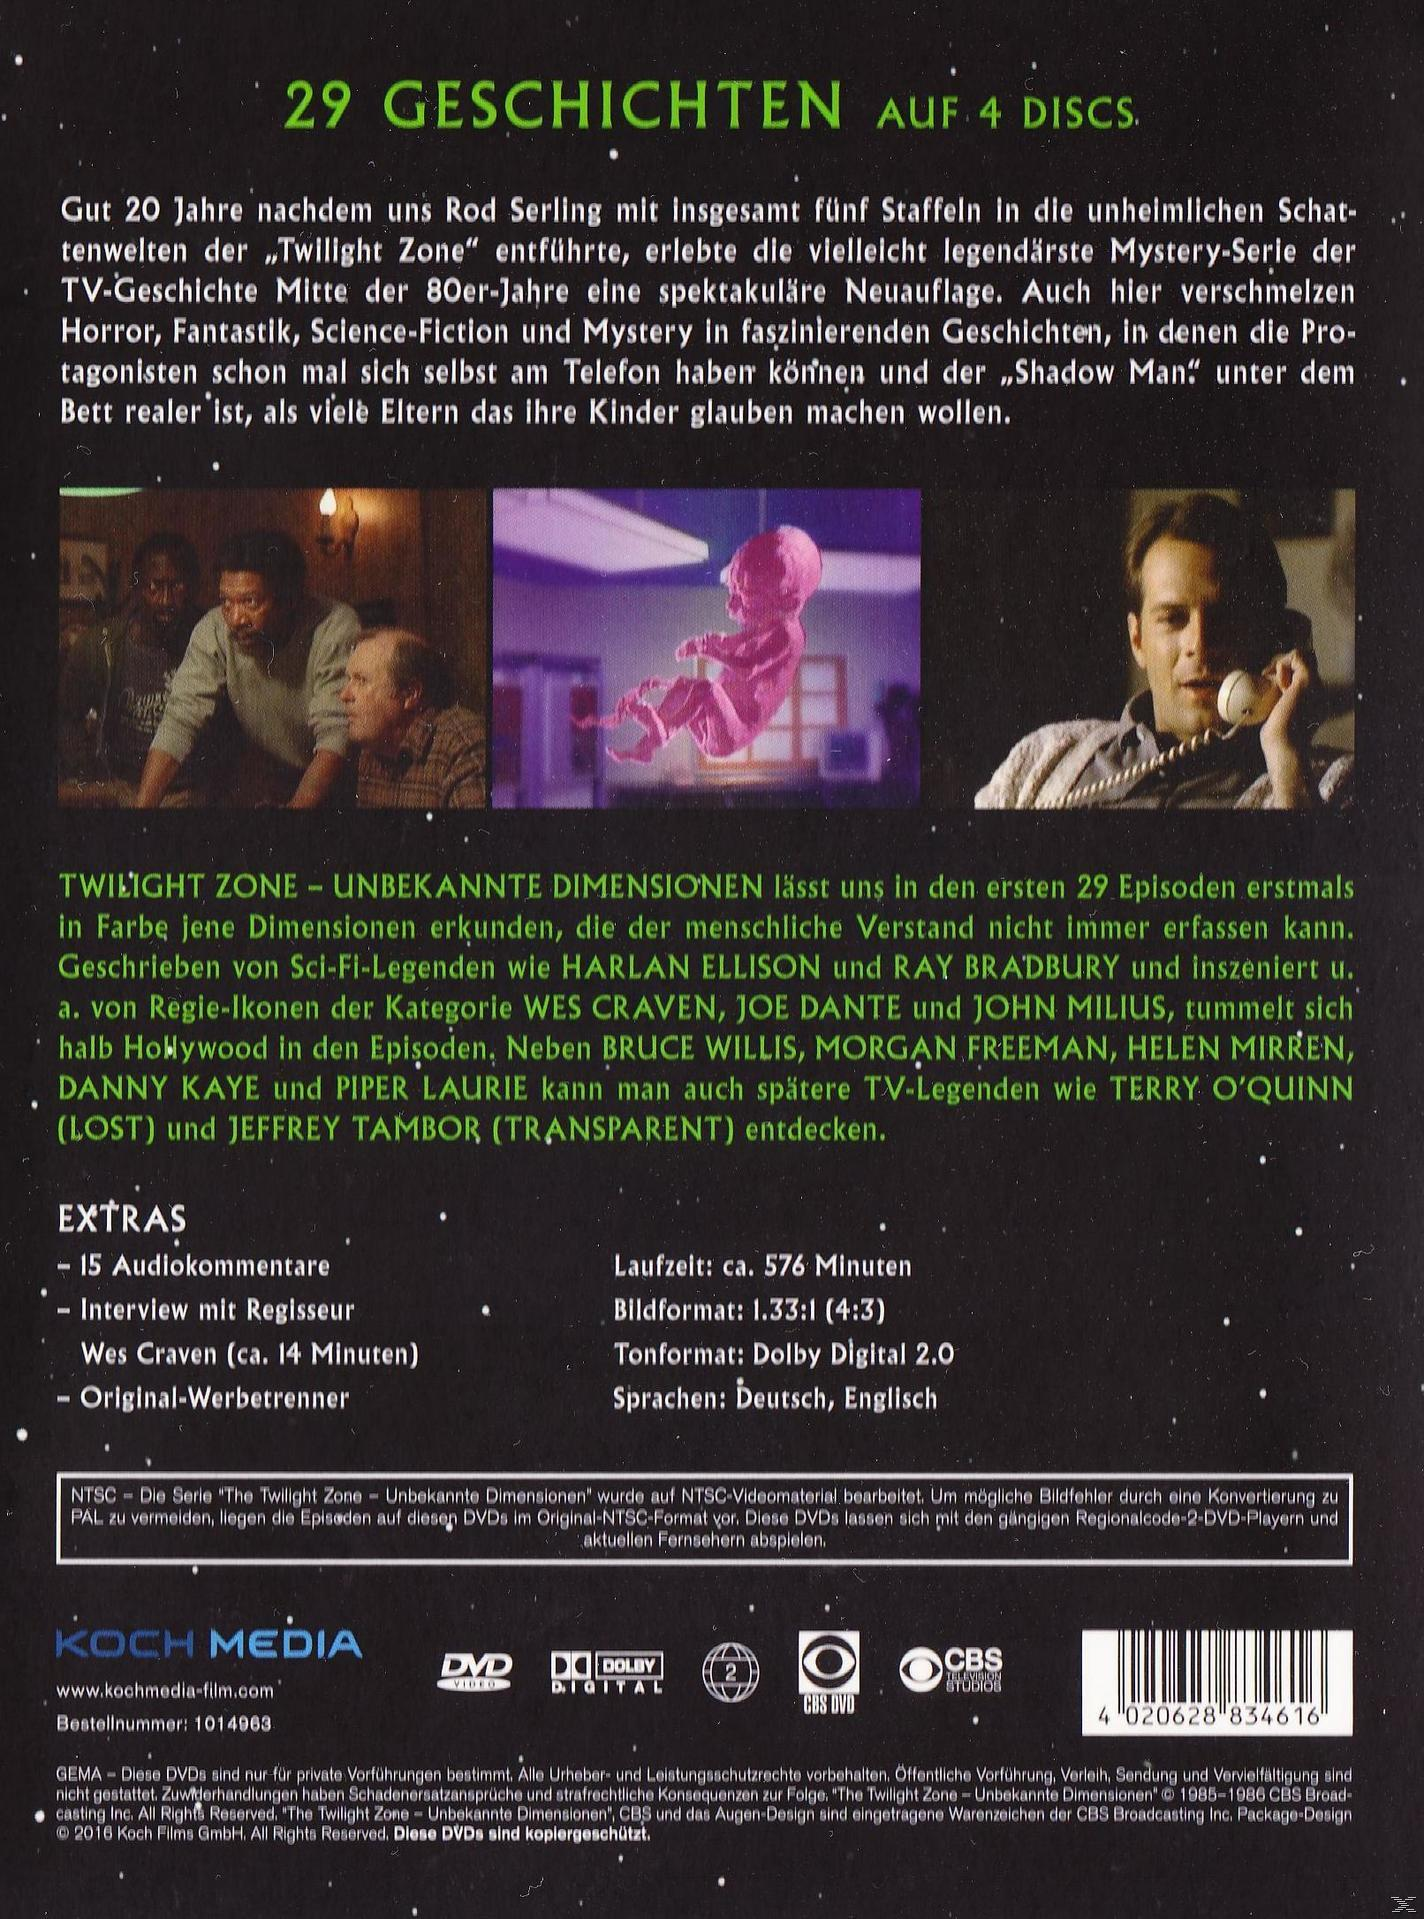 1 Dimensionen Twilight DVD Zone The - Unbekannte